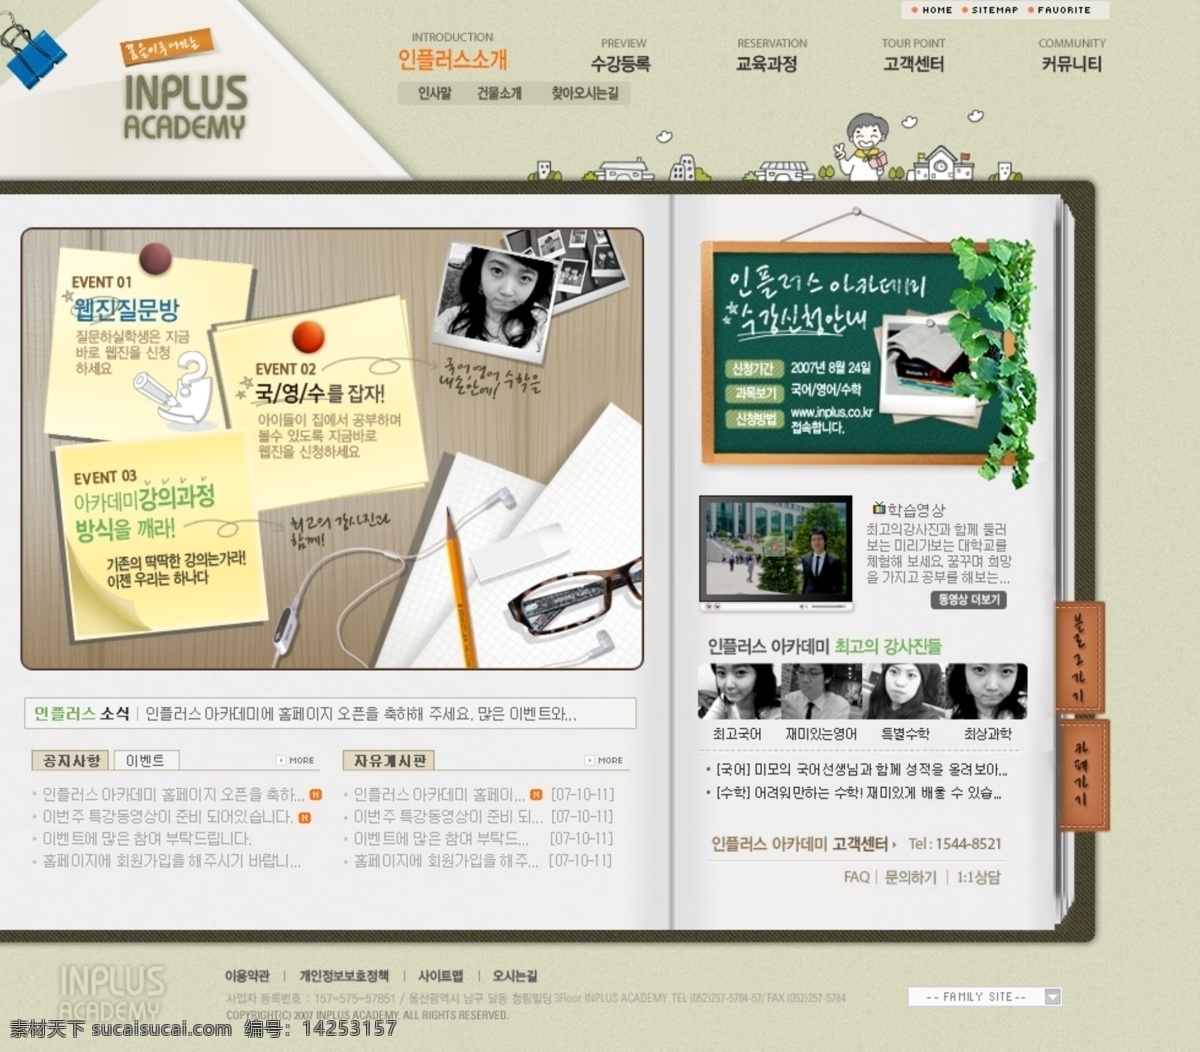 校园 优秀 作品展示 网页模板 韩国风格 展示 优秀作品 网页素材